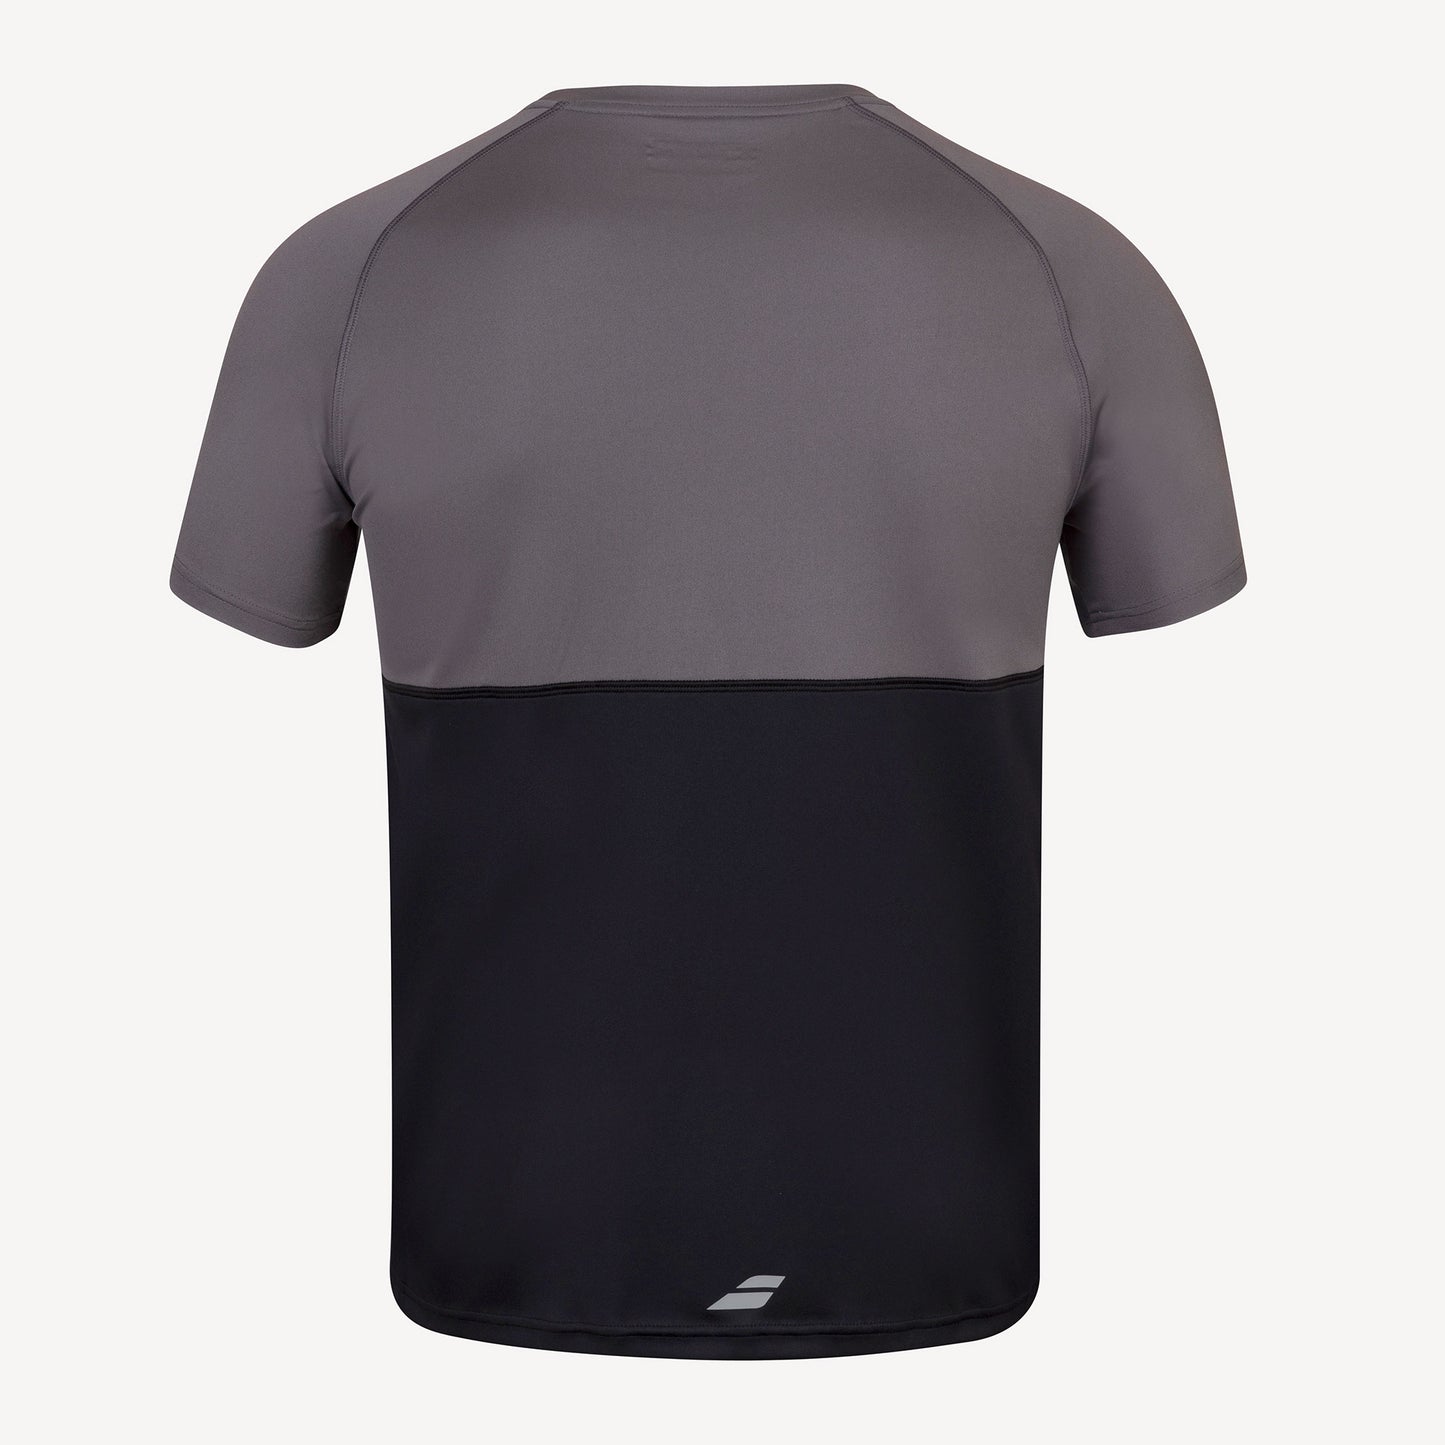 Babolat Play Club Men's Tennis Shirt Black (2)